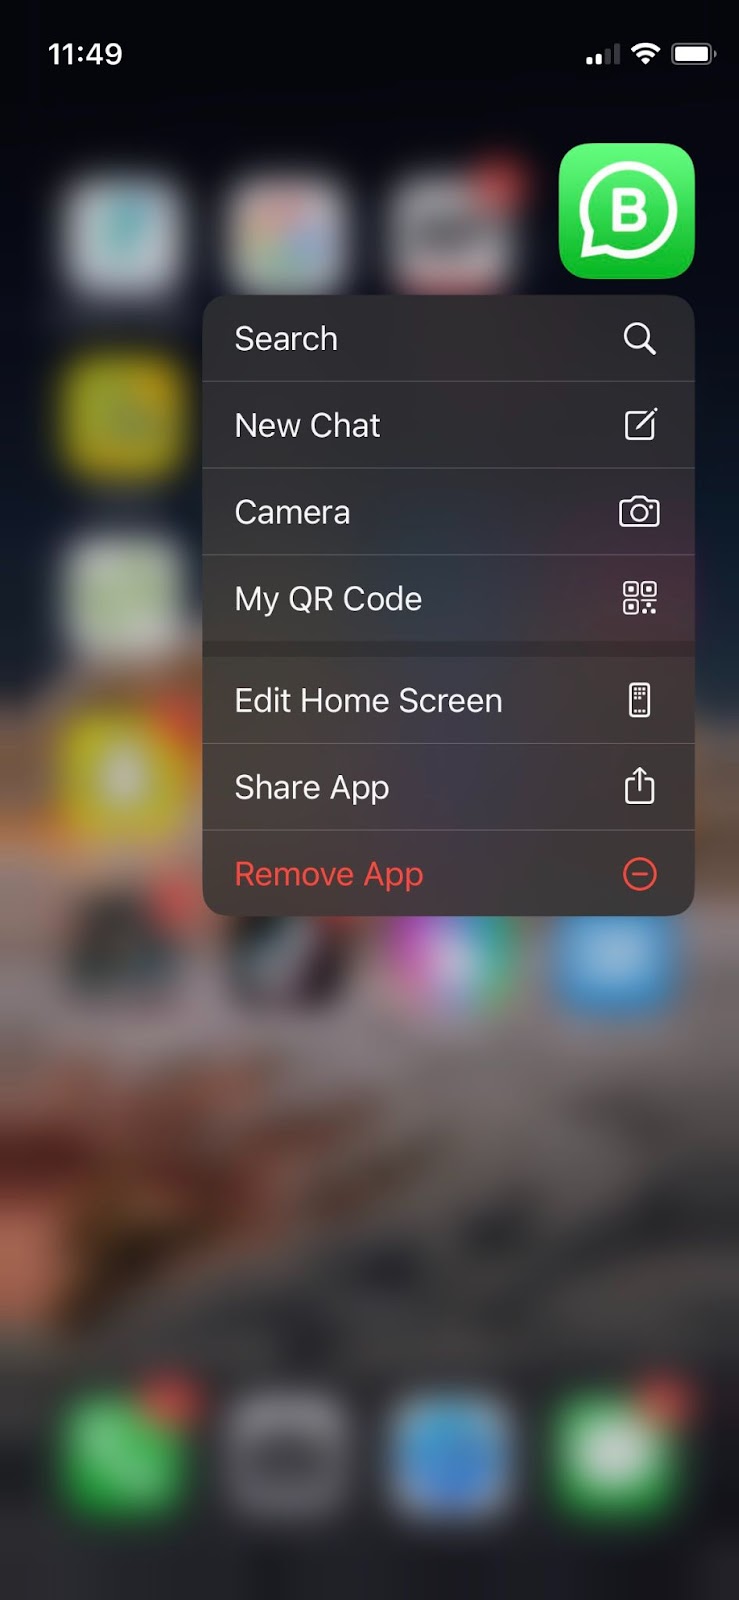 remove app in iPhone